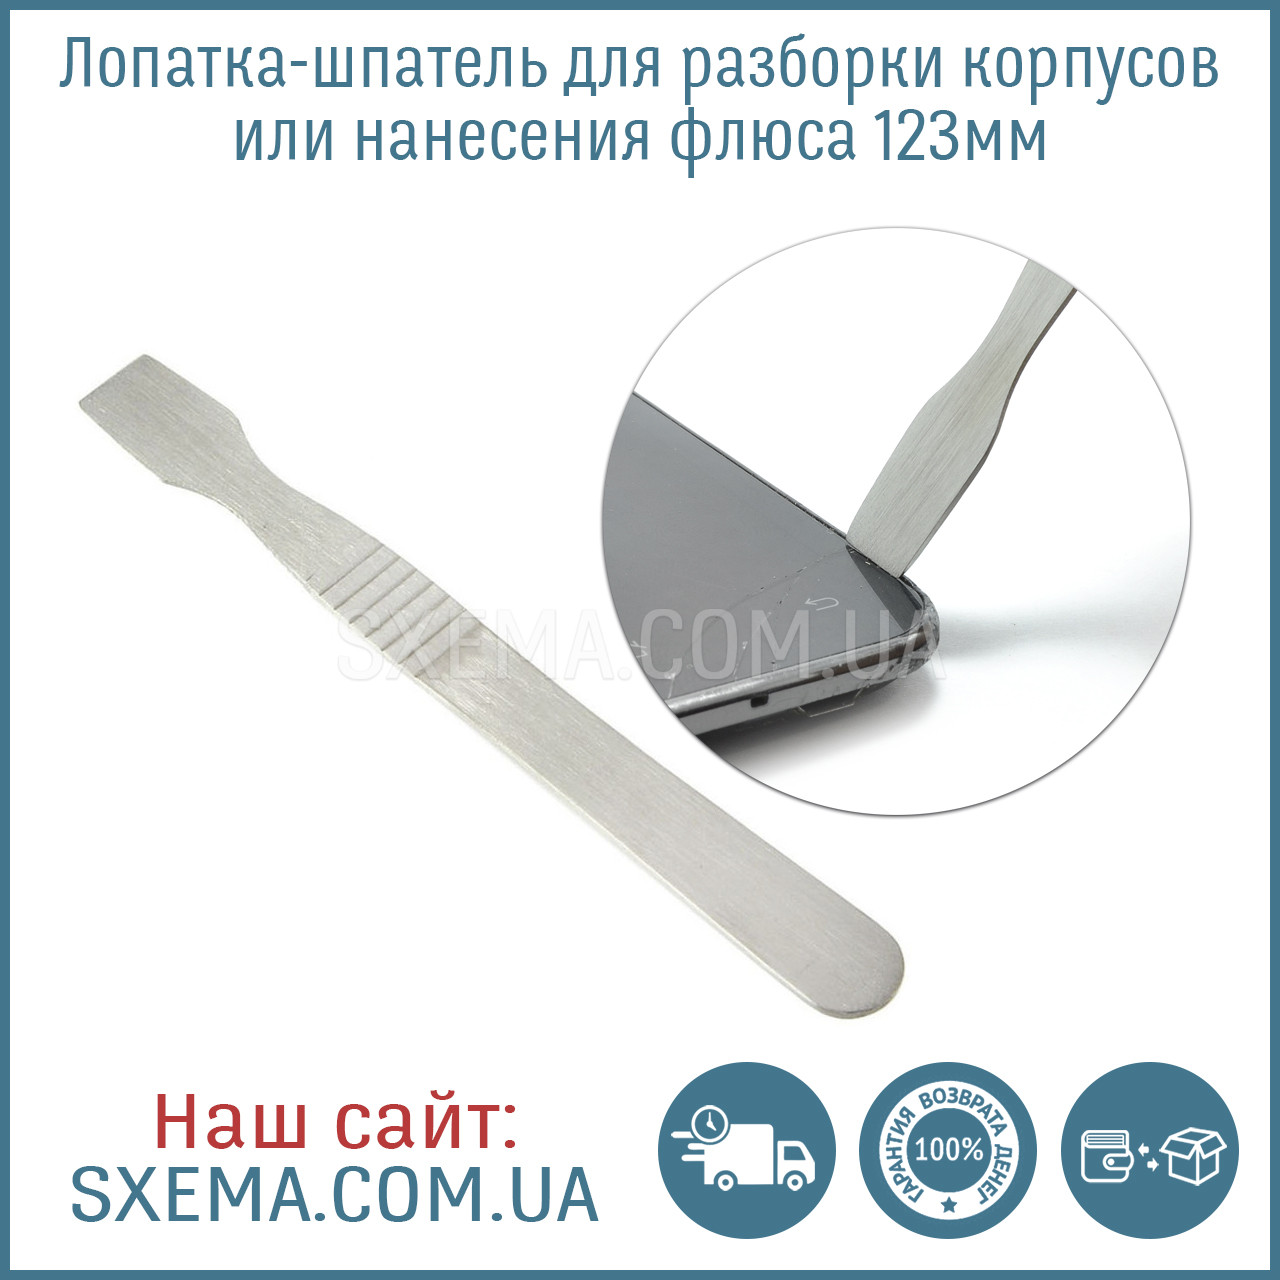 Лопатка-шпатель для розбирання корпусів або нанесення флюсу 123 мм